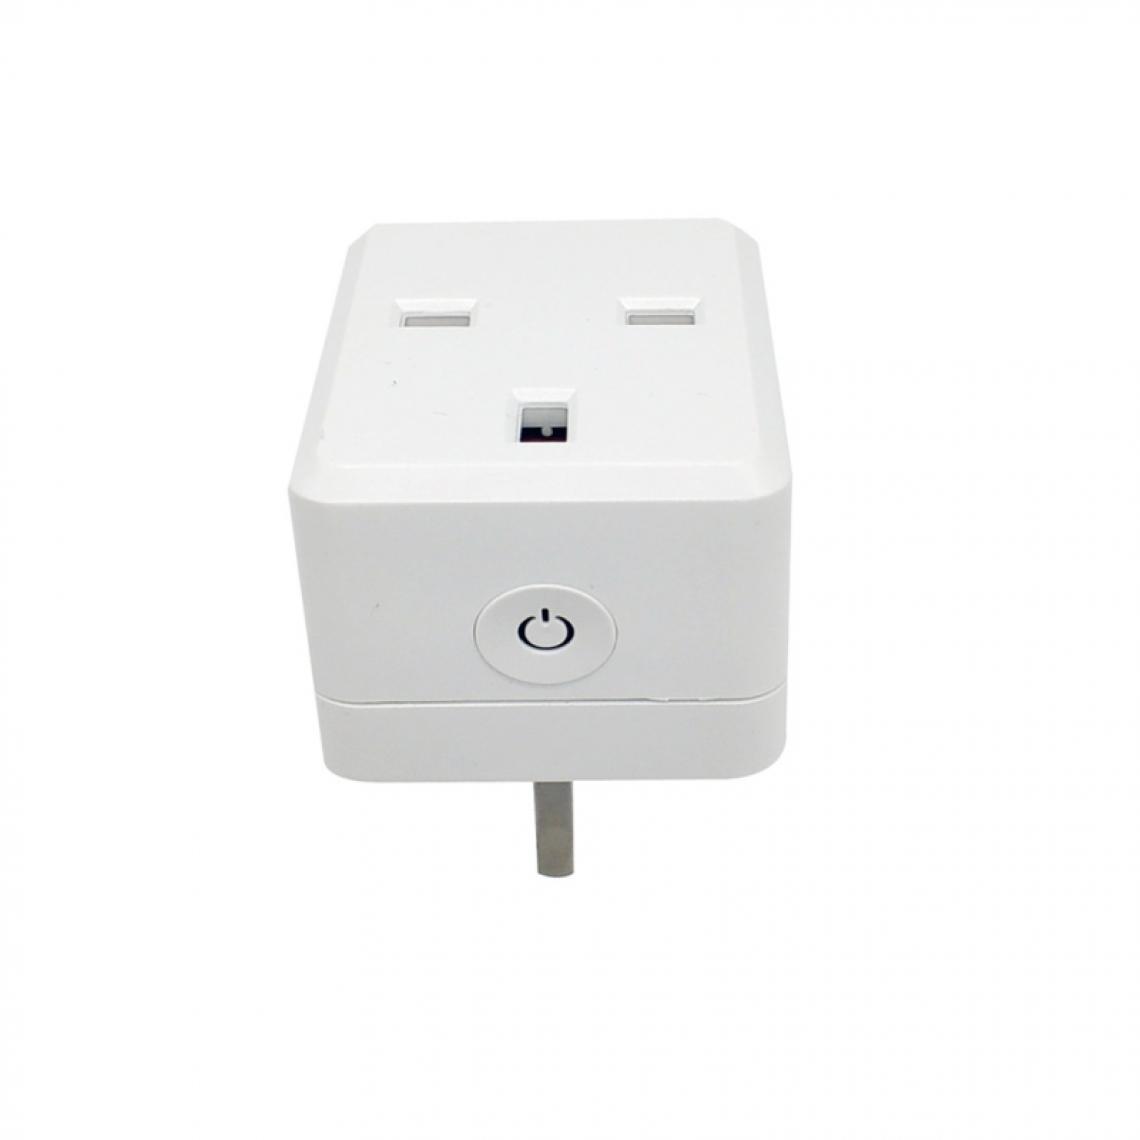 Wewoo - Prise Electrique Connectée d'alimentation intelligente WiFi Télécommande sans fil Interrupteur avec port USB, compatible Alexa et Google Home, en charge iOS Android, européenne - Box domotique et passerelle